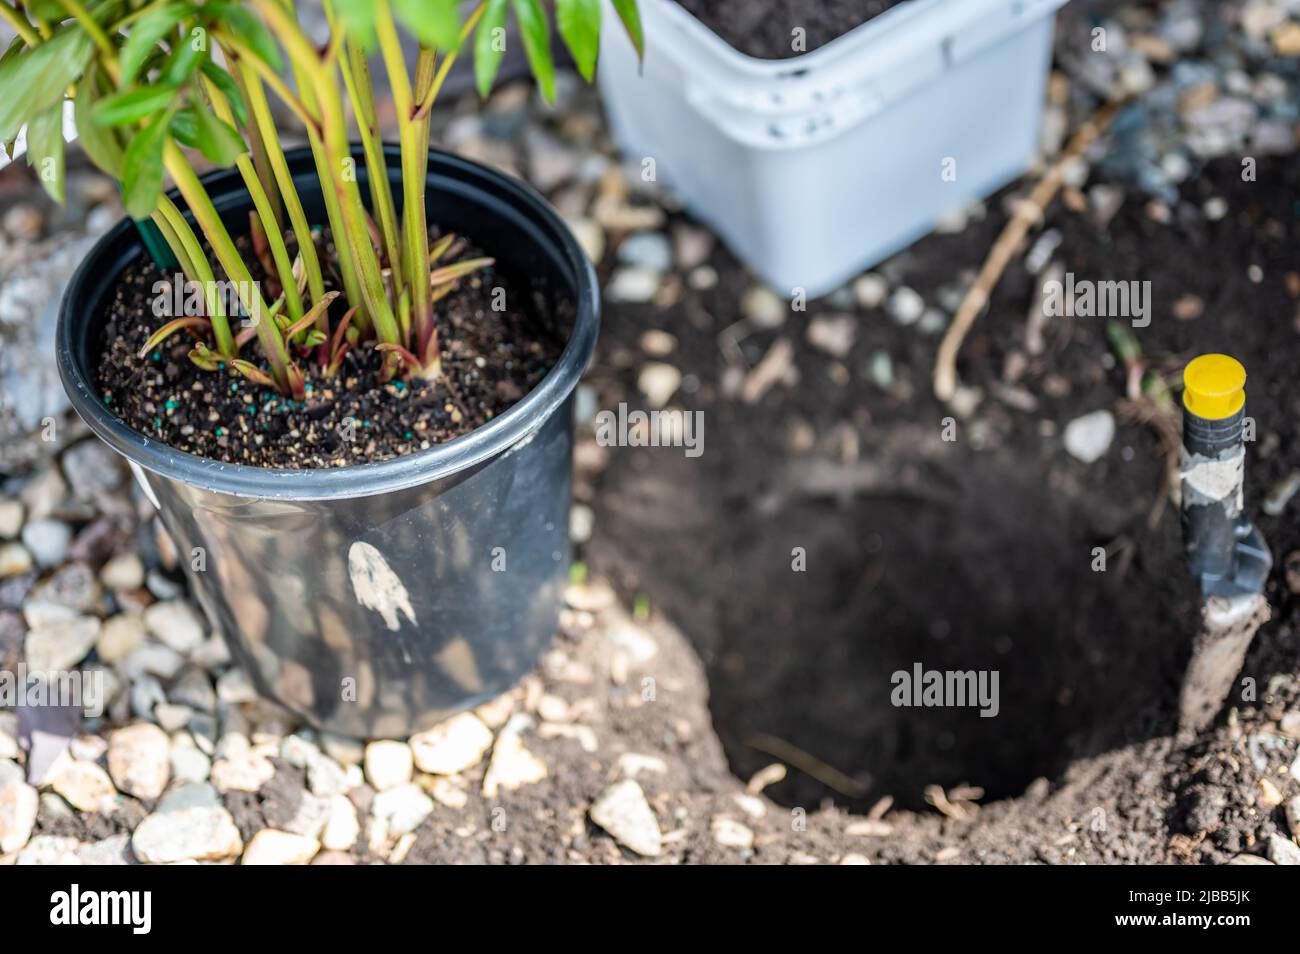 Verpflanzen einer wurzelgebundenen Topfpflanze in ein neu gegrabenes Loch in einer gerockten Grenze in der Nähe eines Hauses. Stockfoto